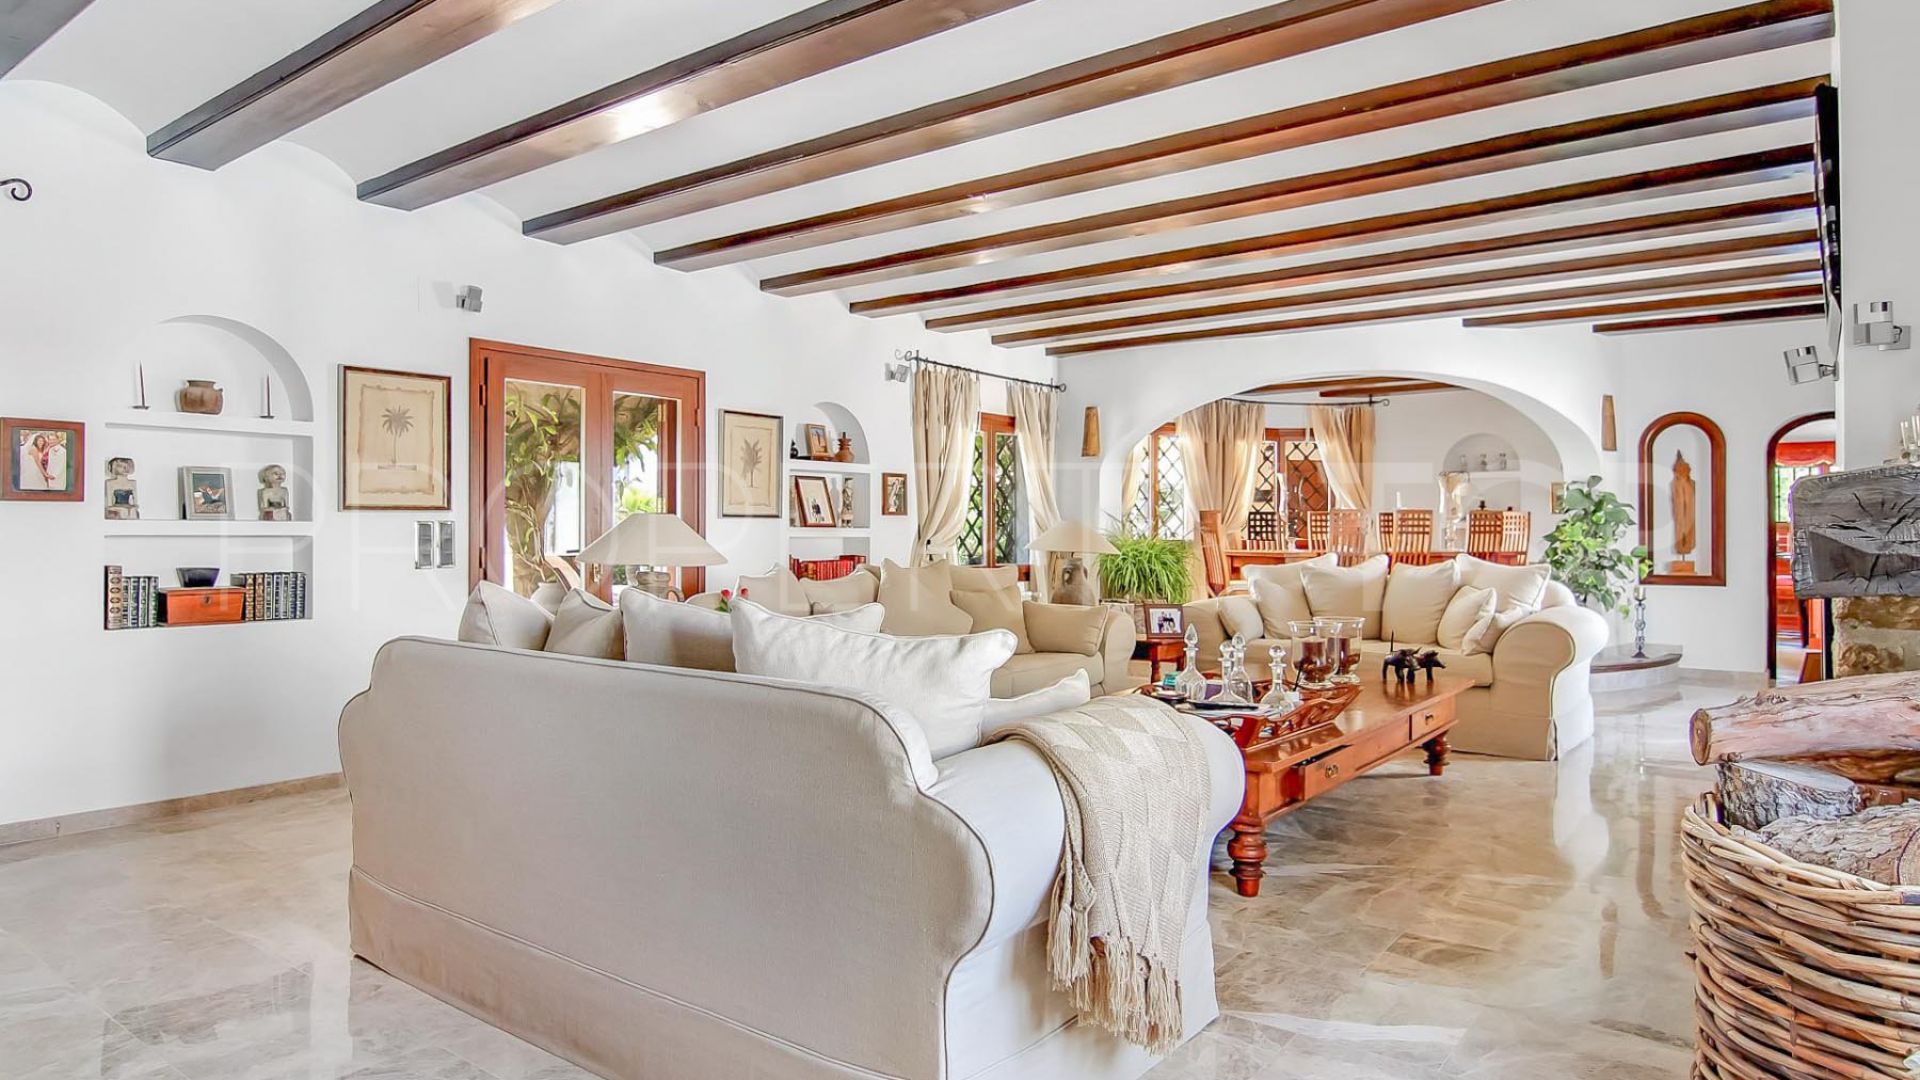 Buy villa in Benissa with 4 bedrooms